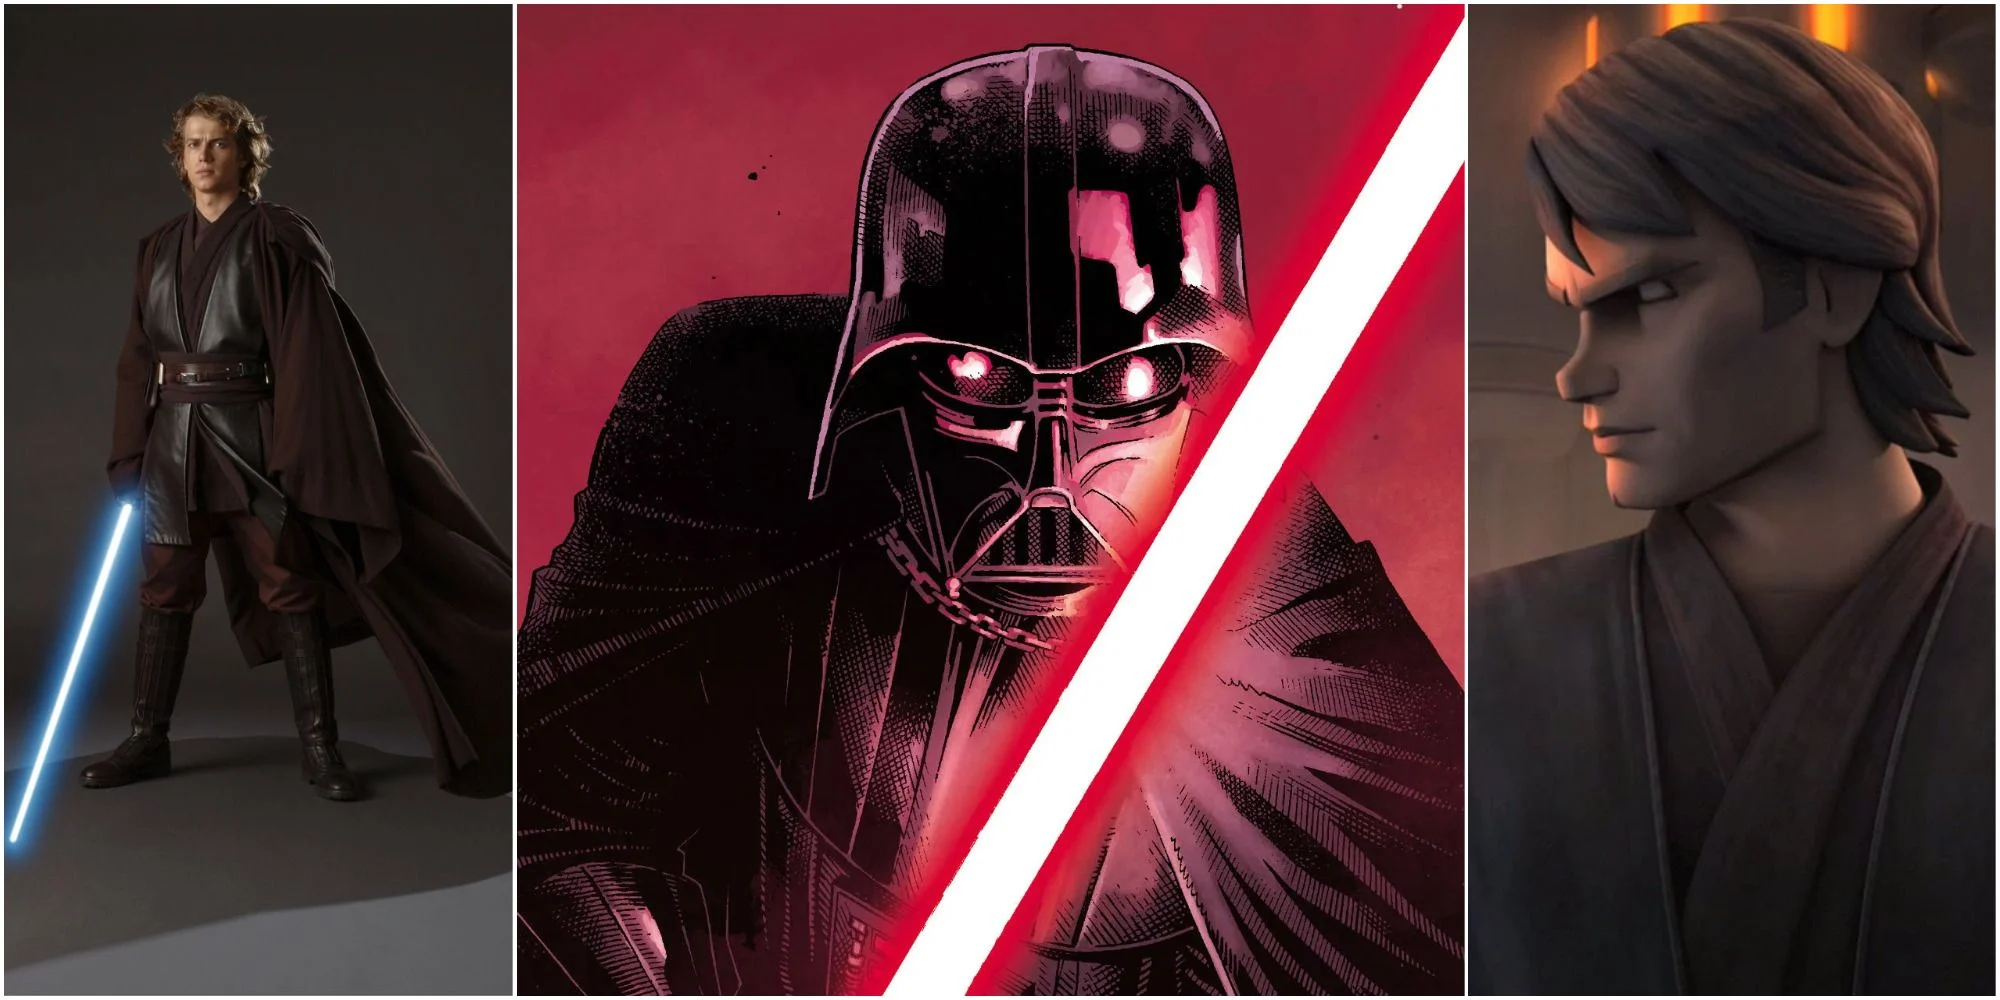 Darth Vader sabe que é Anakin e por que ele se refere a Anakin como uma pessoa diferente?